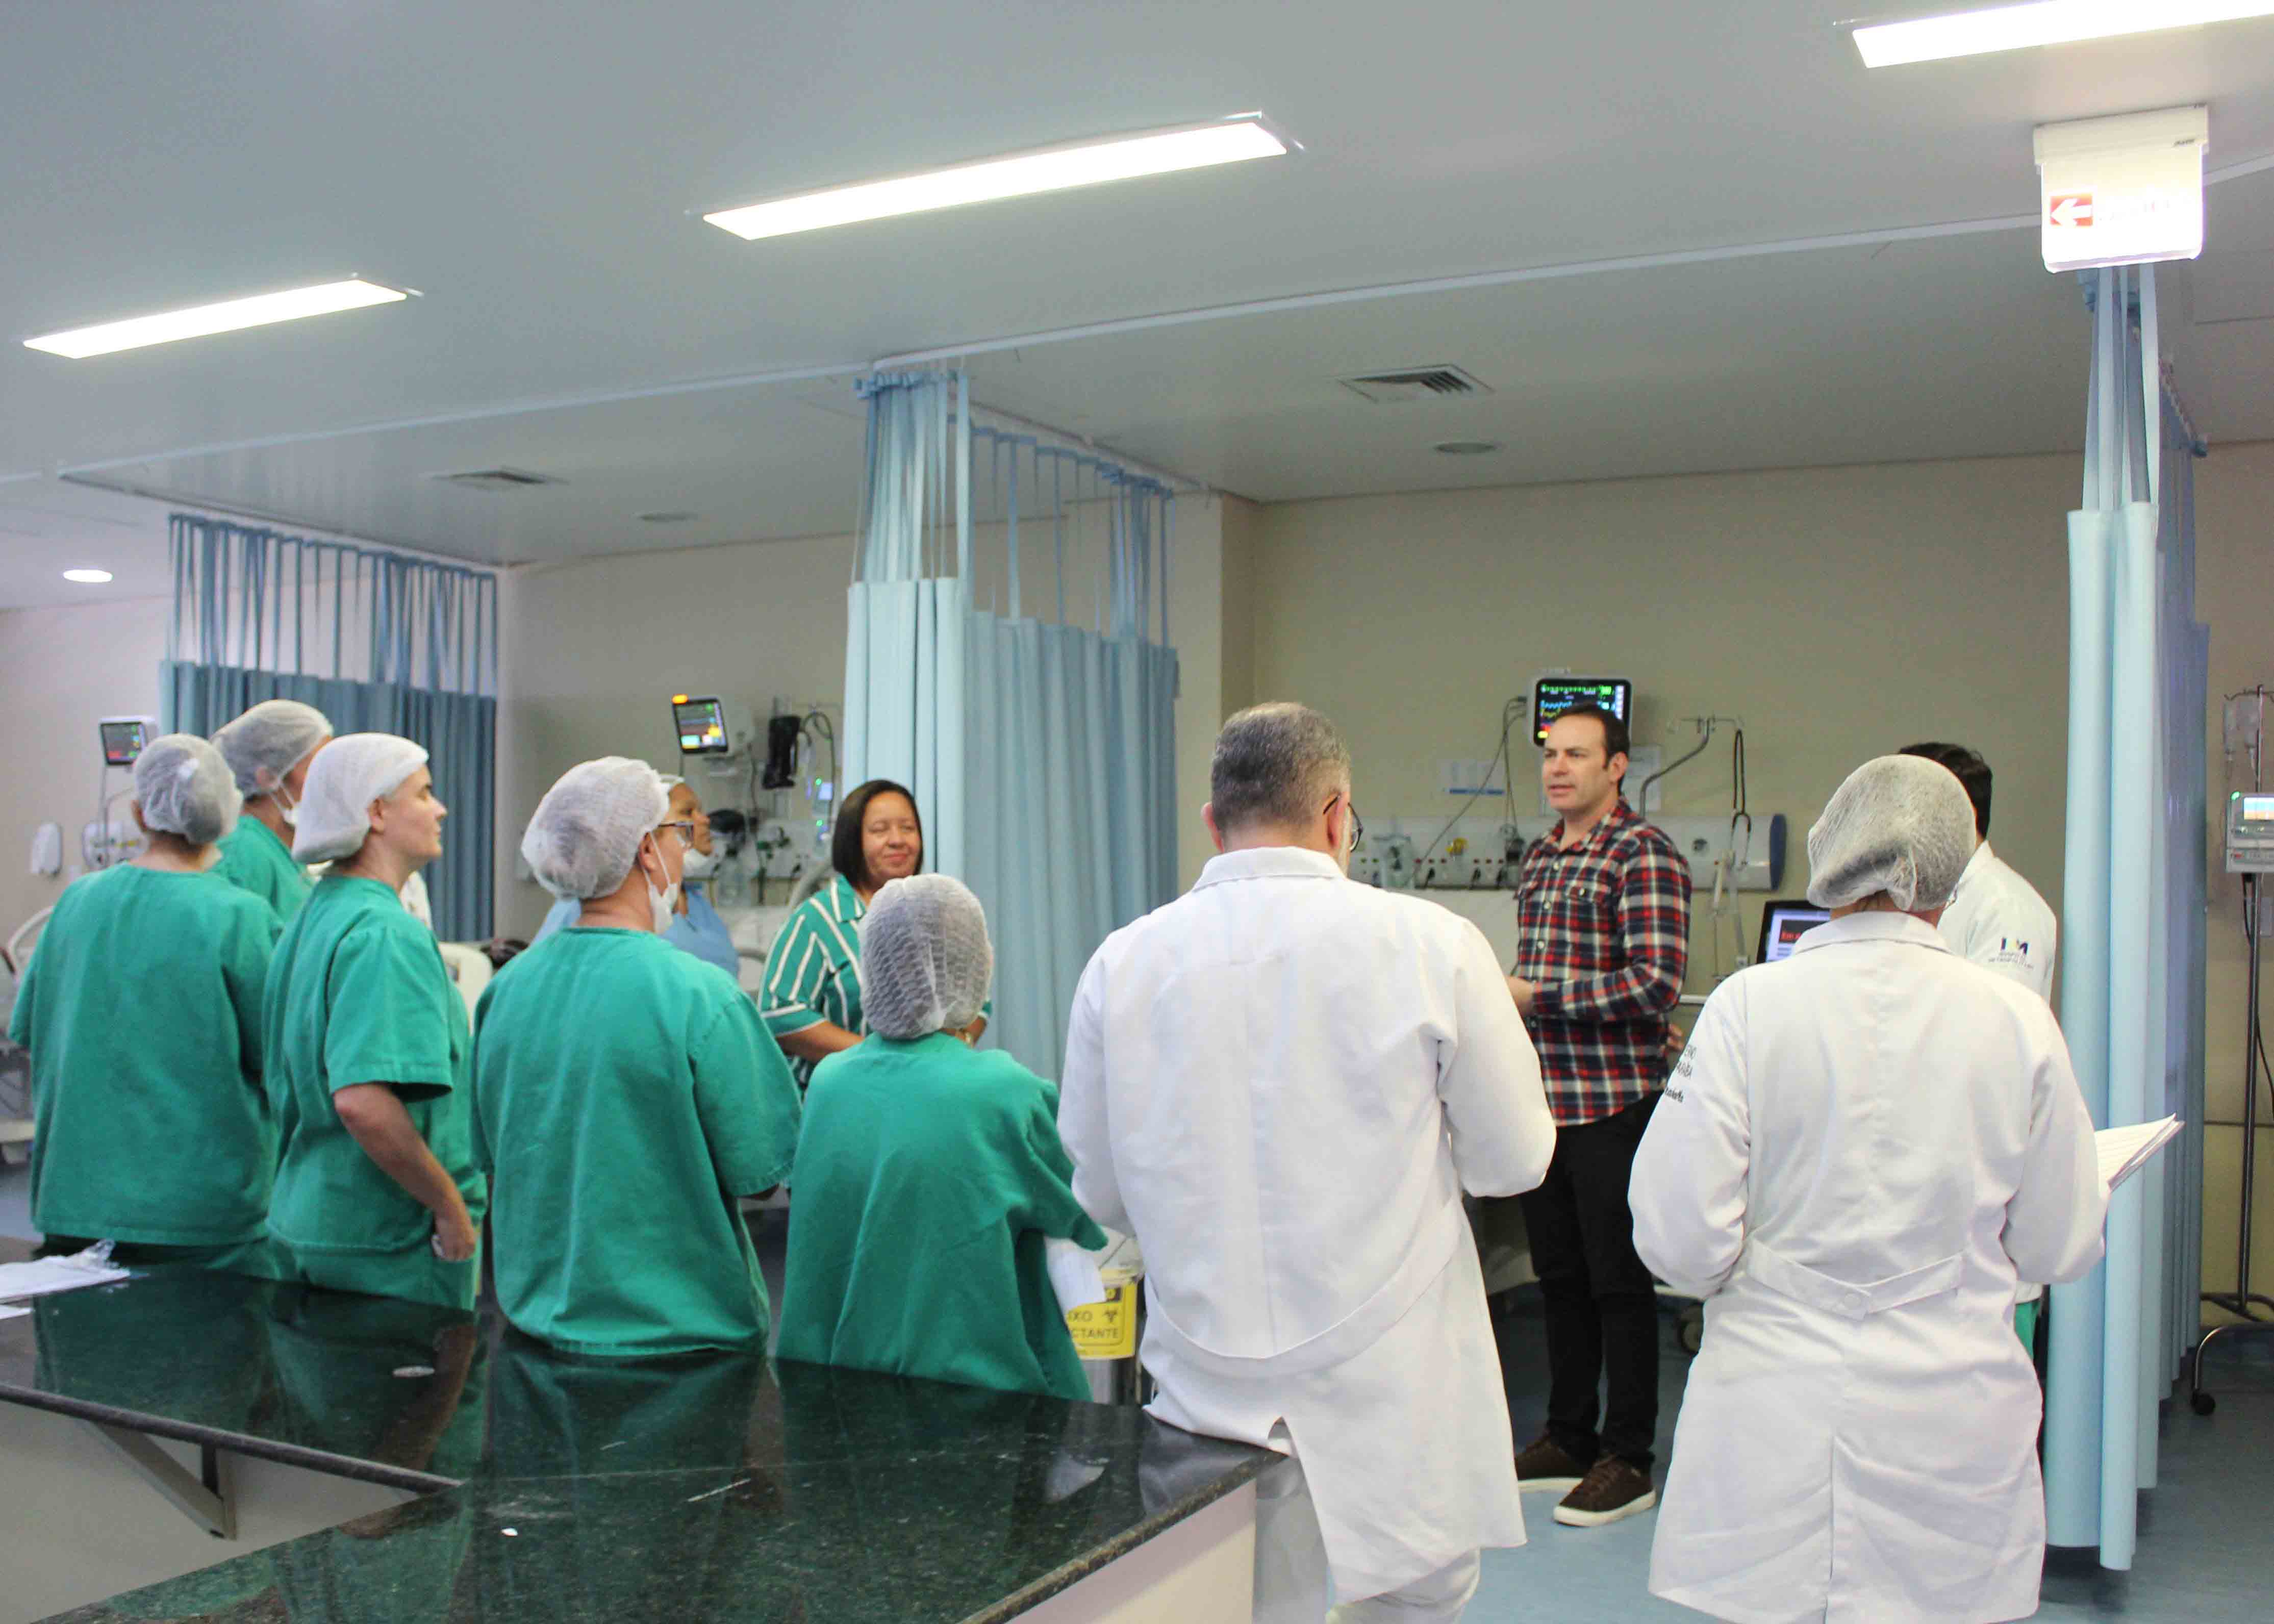 equipe multidisciplinar do hospital metropolitano faz atividade em UTI (1).jpg